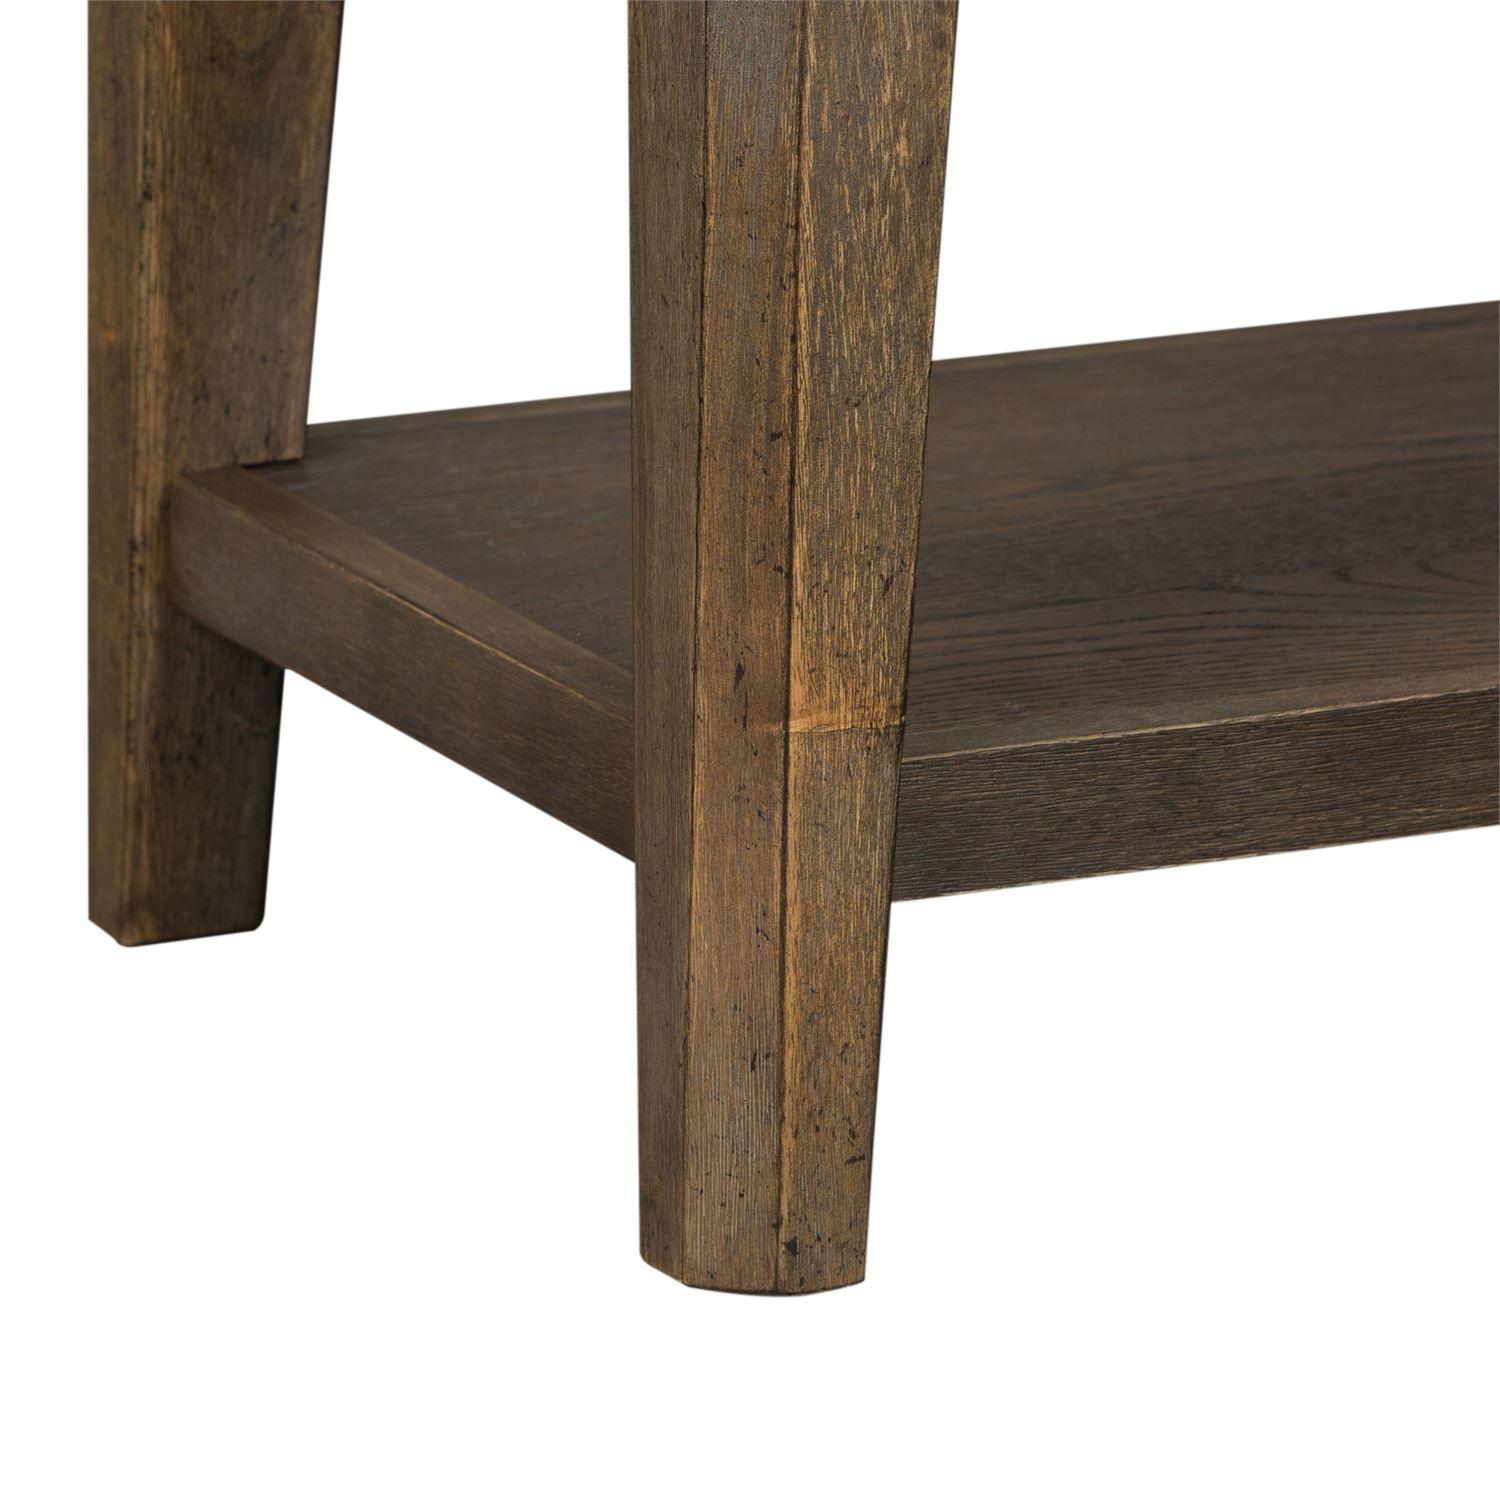 

    
823-C9001B Urban Gray Wood Bench Artisan Prairie (823-DR) Liberty Furniture
